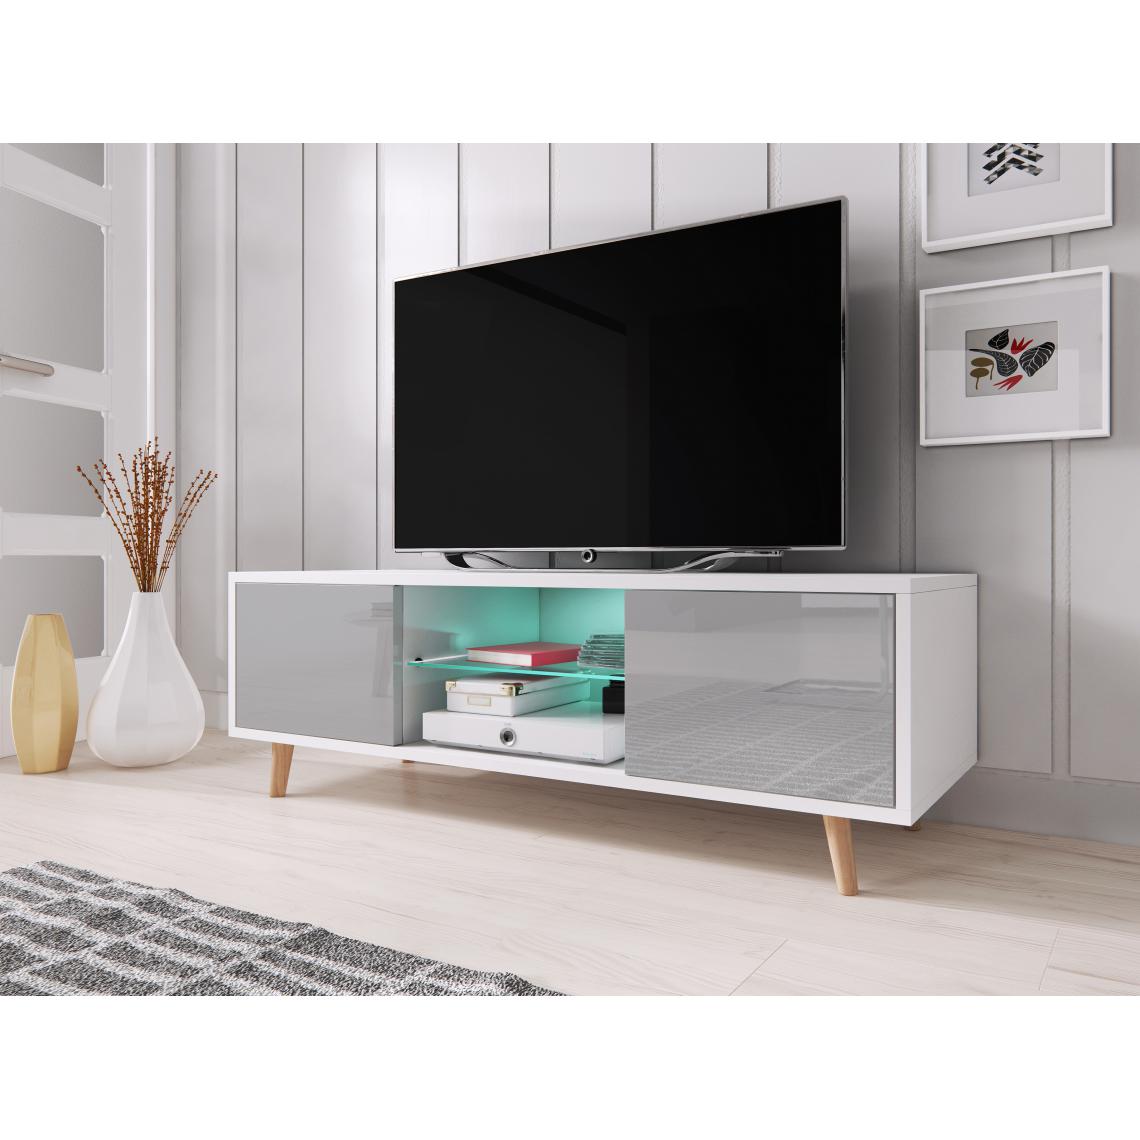 3xeliving - Meuble TV scandinave et minimaliste Cindi Avec éclairage LED. Couleur blanche/grise. - Meubles TV, Hi-Fi